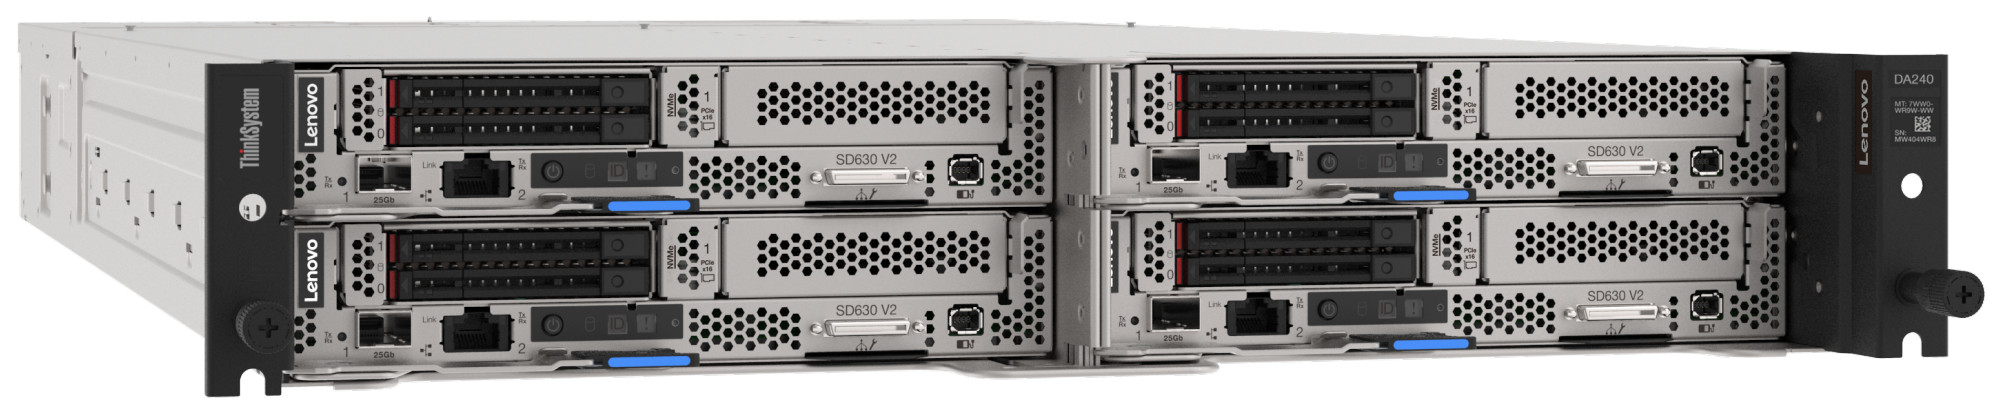 Сервер Lenovo ThinkSystem SD630 V2 (7D1KCTO1WW). Конфигурируемая комплектация сервера